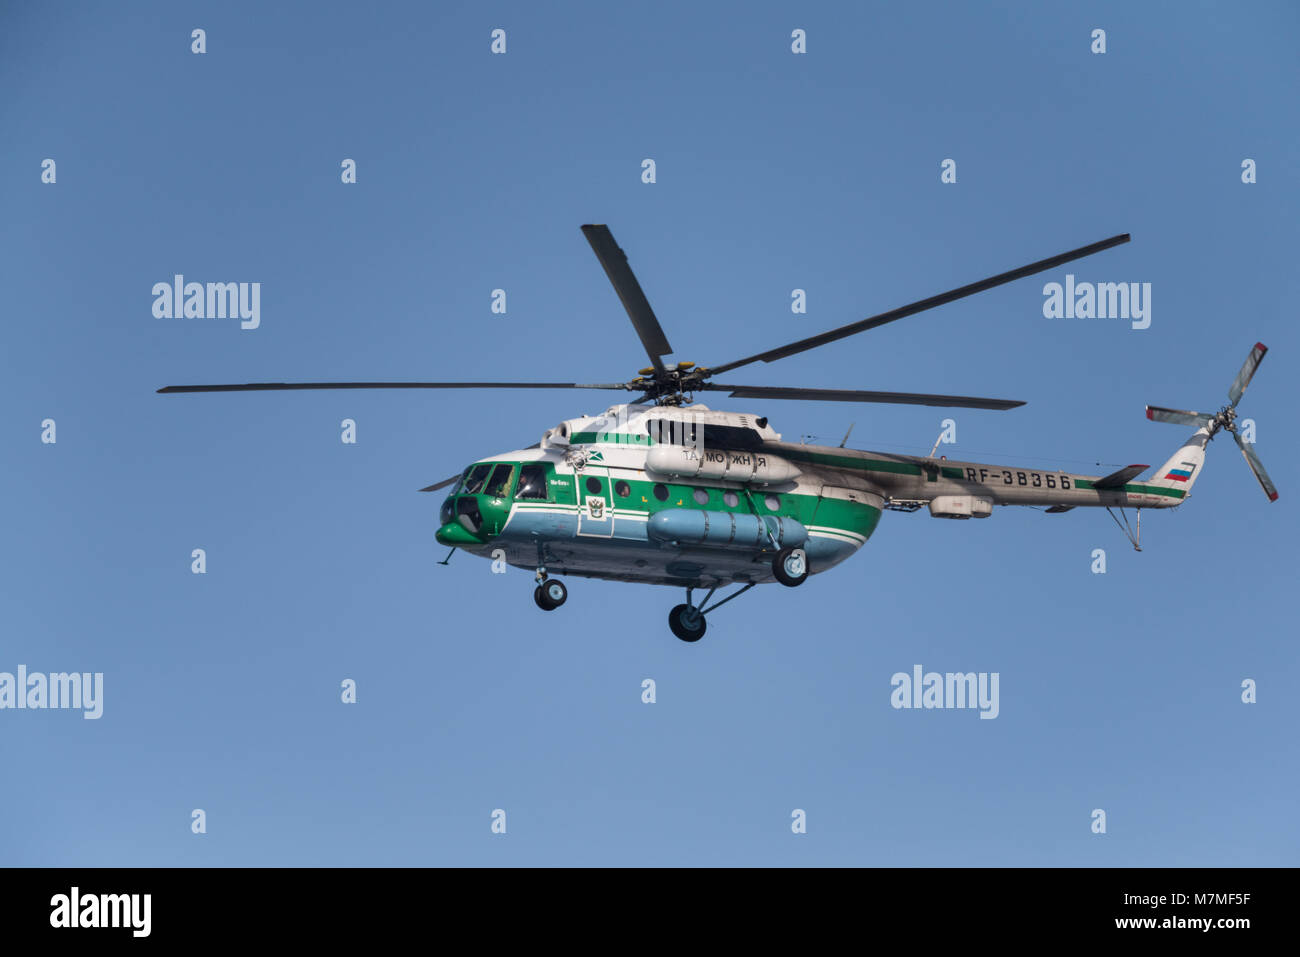 Novosibirsk, Russie - le 14 février 2018 : Helicopter Mil Mi-8 Hip MTV-1 RF-38366 dans le ciel près de l'Aéroport International Tolmachevo Banque D'Images